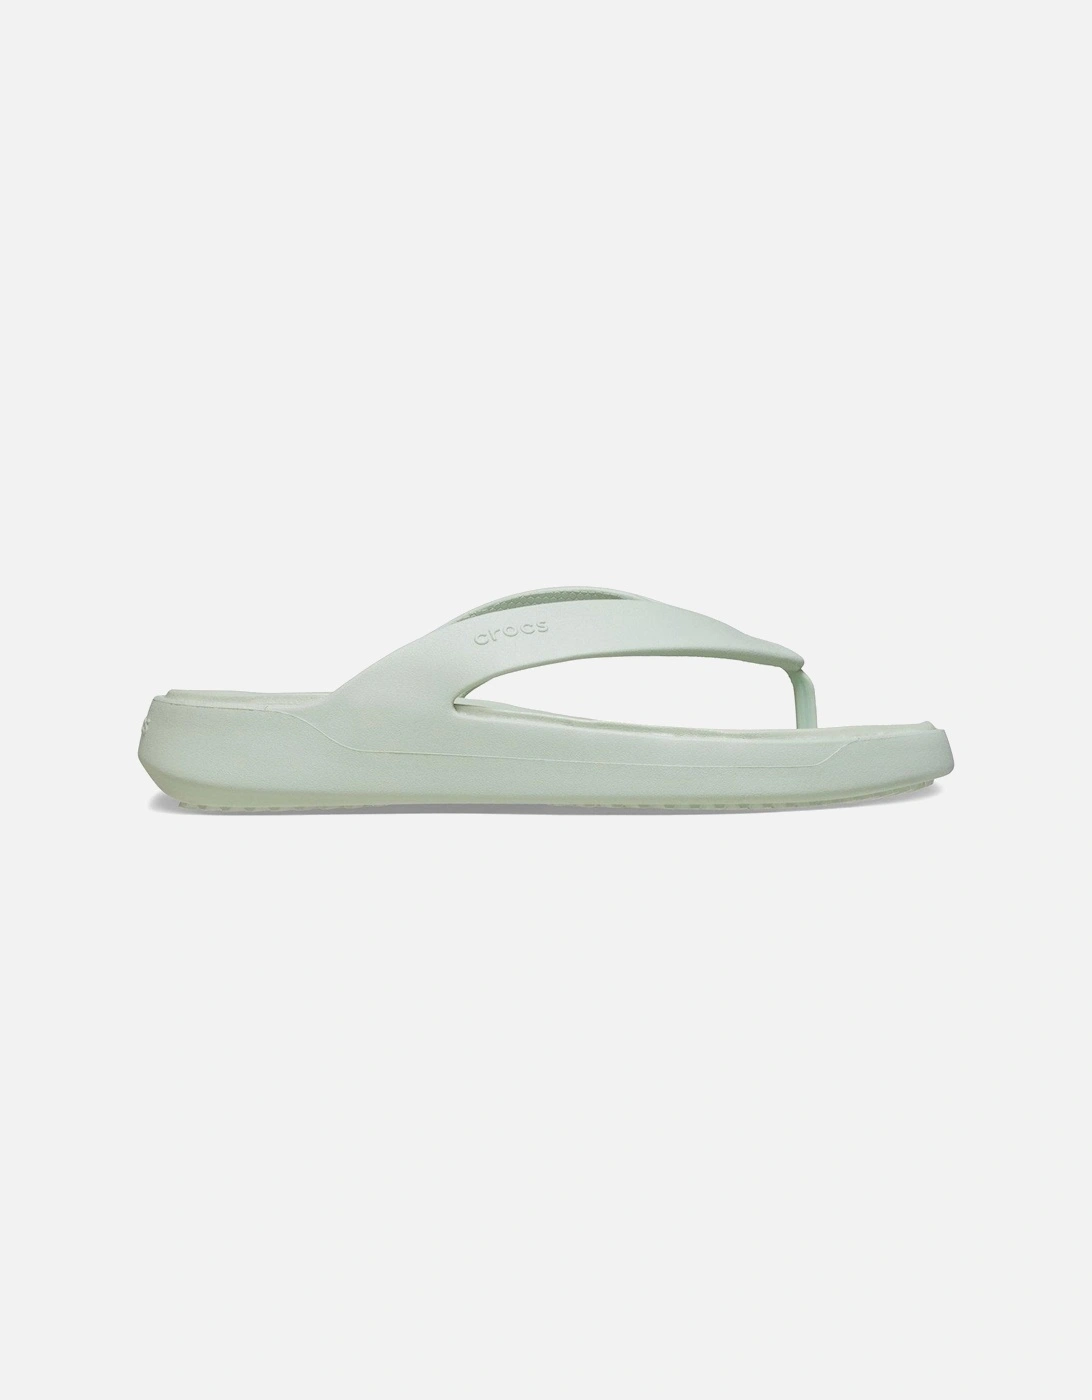 Getaway Flip Toepost Sandals - Plaster, 2 of 1